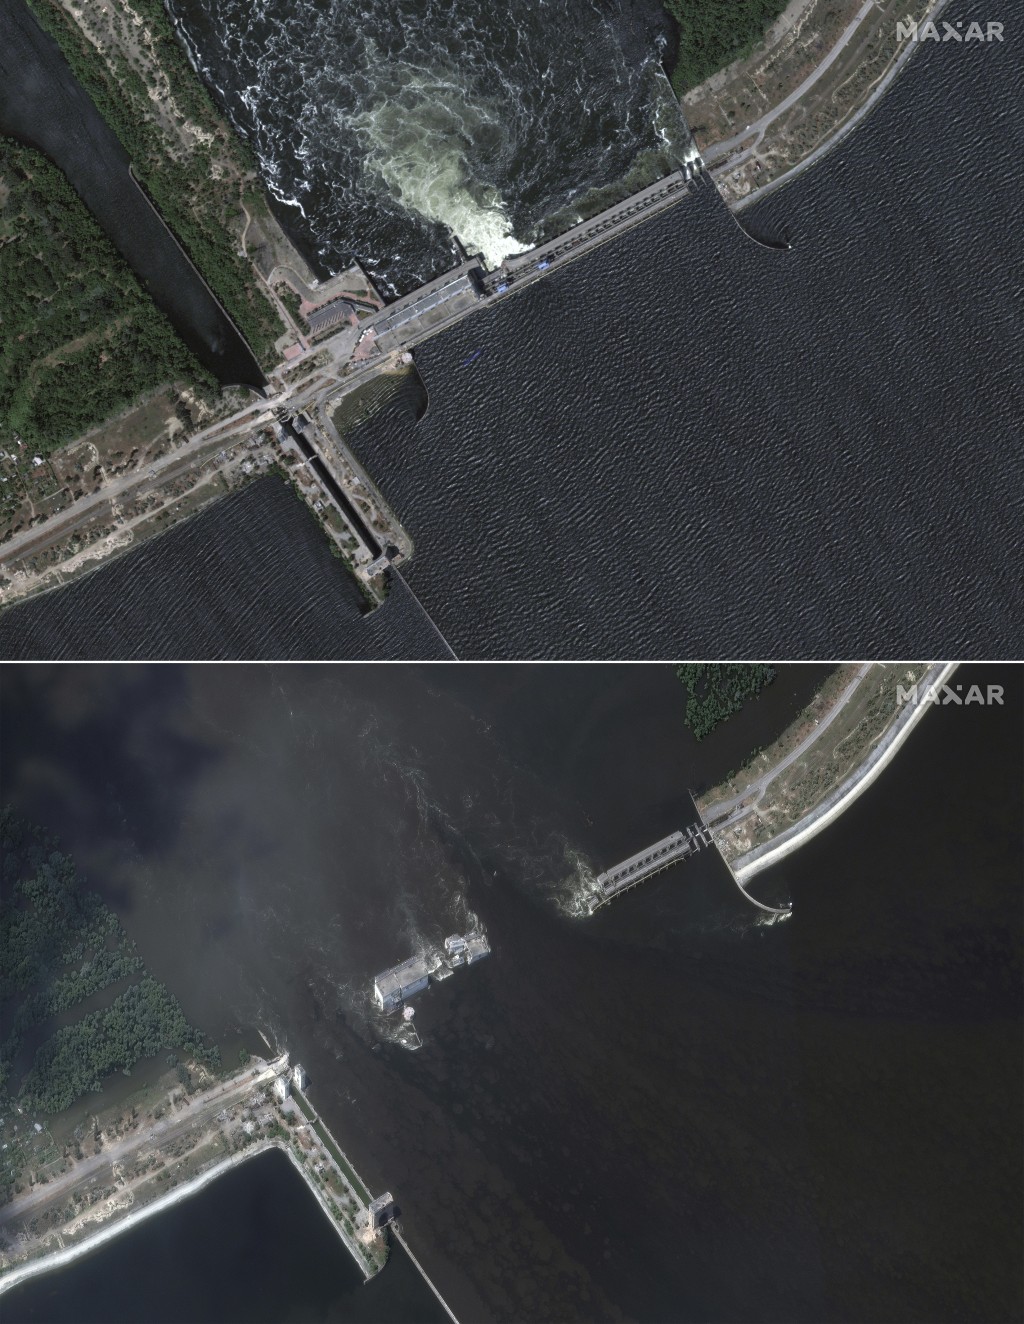 衛星圖片顯示，卡科夫卡大壩從中間斷裂。AP/Maxar